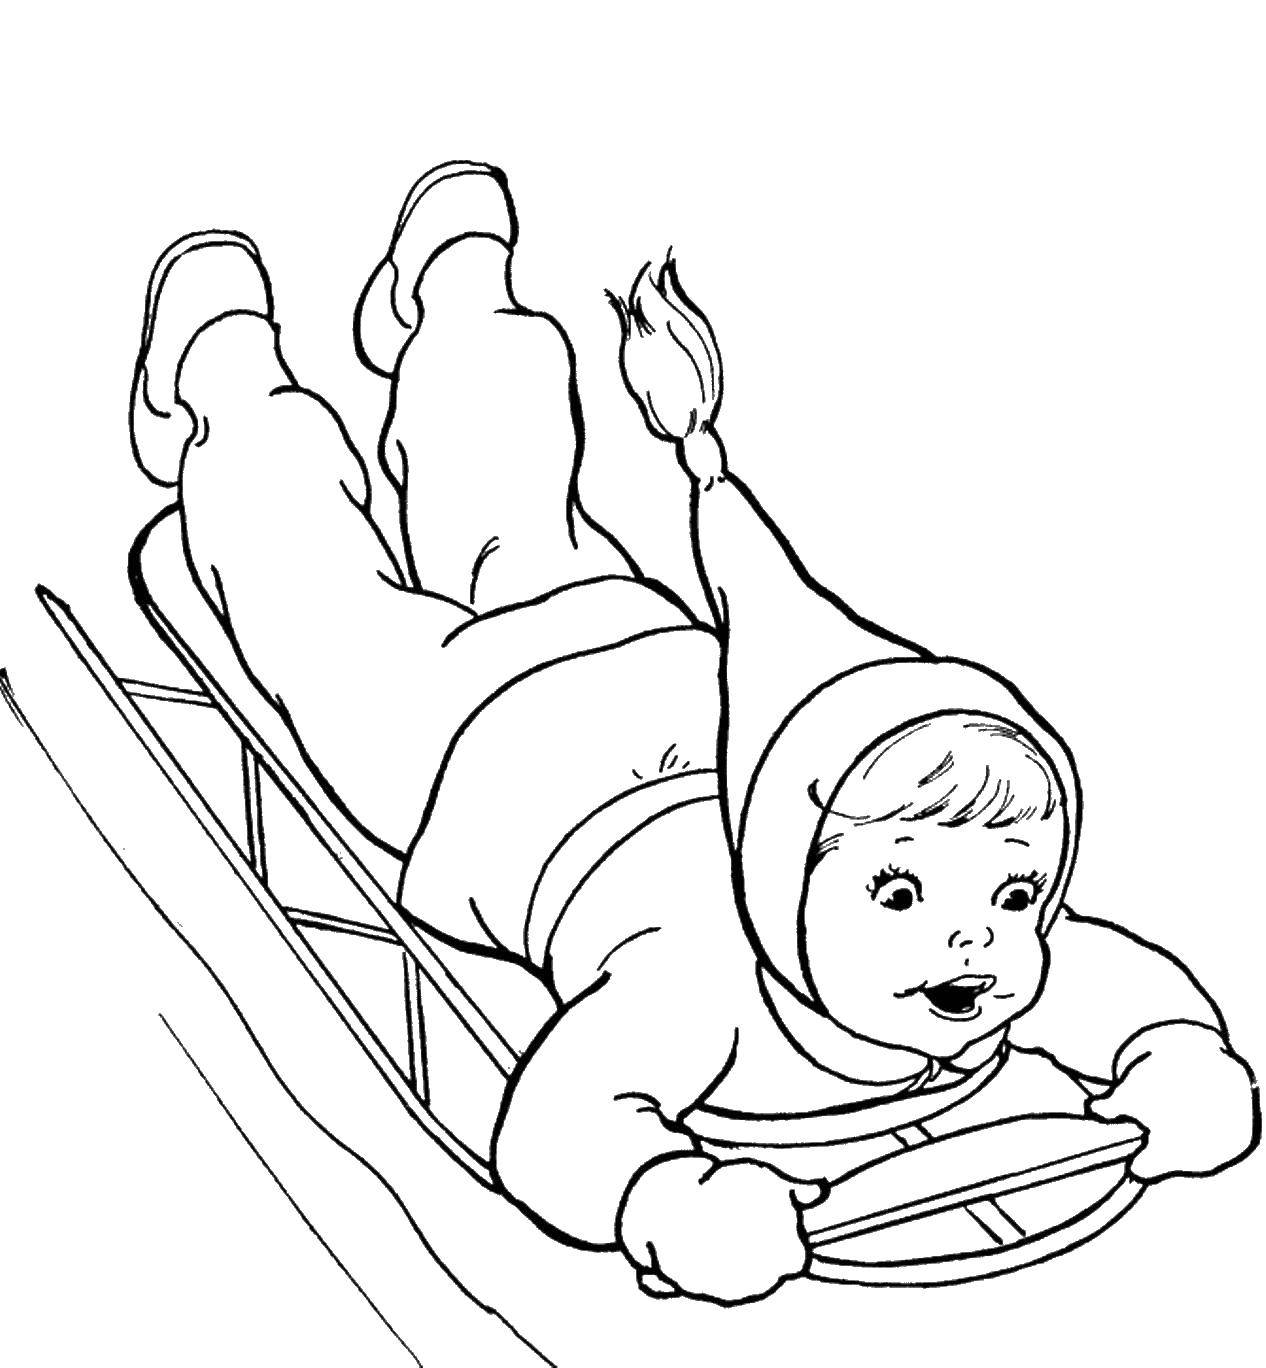 Опис: розмальовки  Дитина катається на санчатах. Категорія: зима. Теги:  зима, санки, дитина.